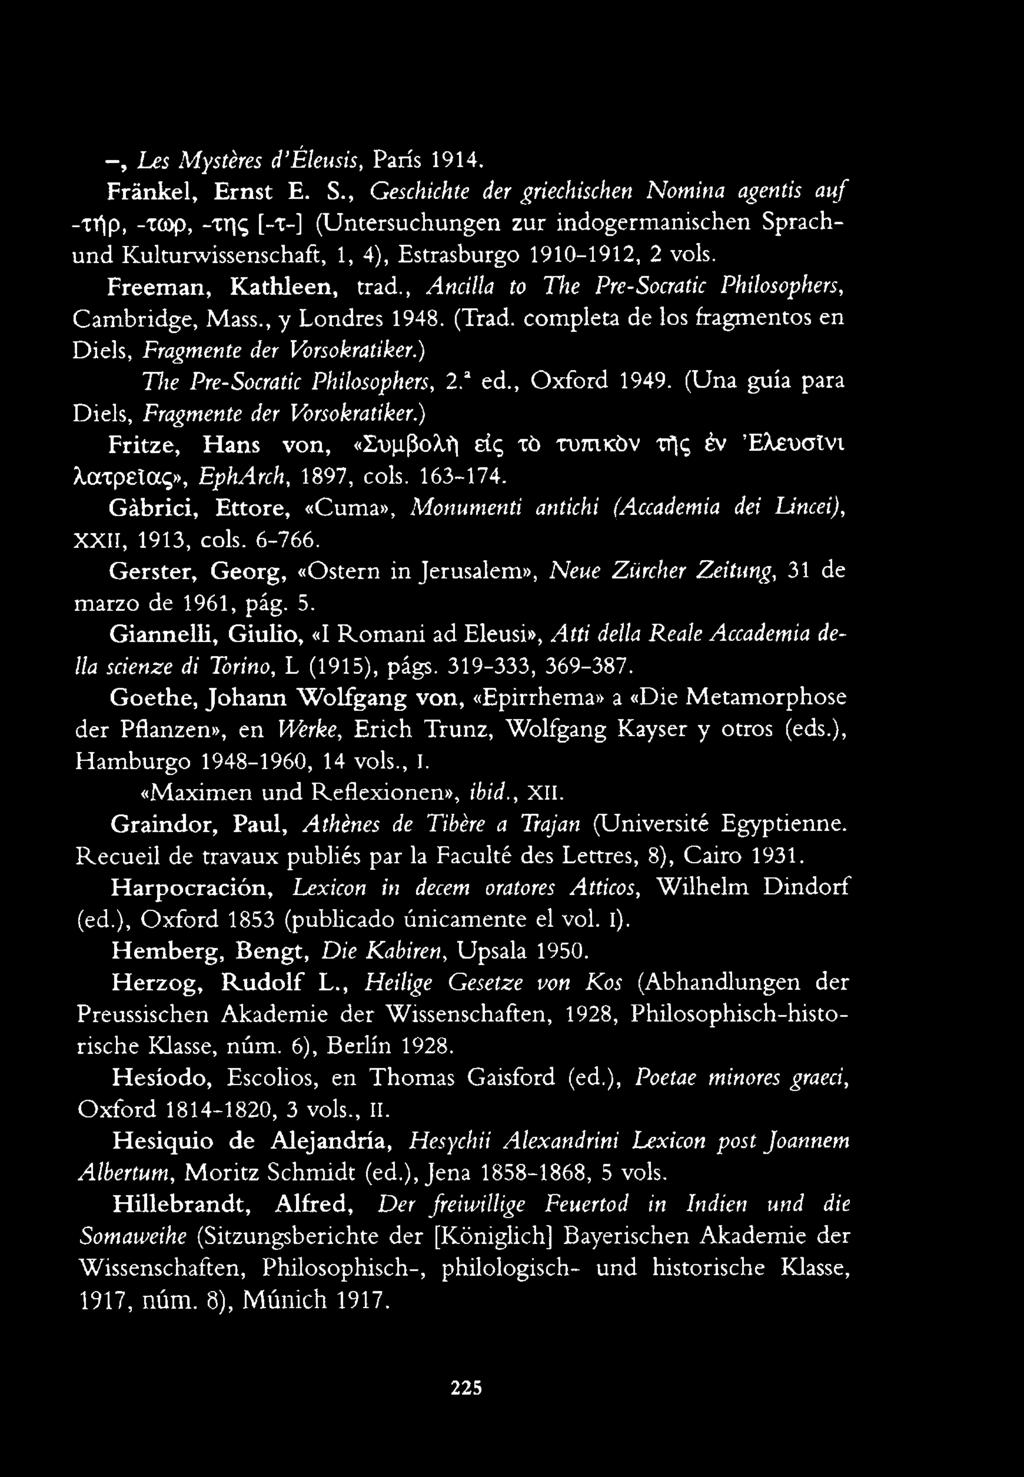 Freeman, Kathleen, trad., Ancilla to The Pre-Socratic Philosophers, Cambridge, Mass., y Londres 1948. (Trad. completa de los fragmentos en Diels, Fragmente der Vbrsokratiker.